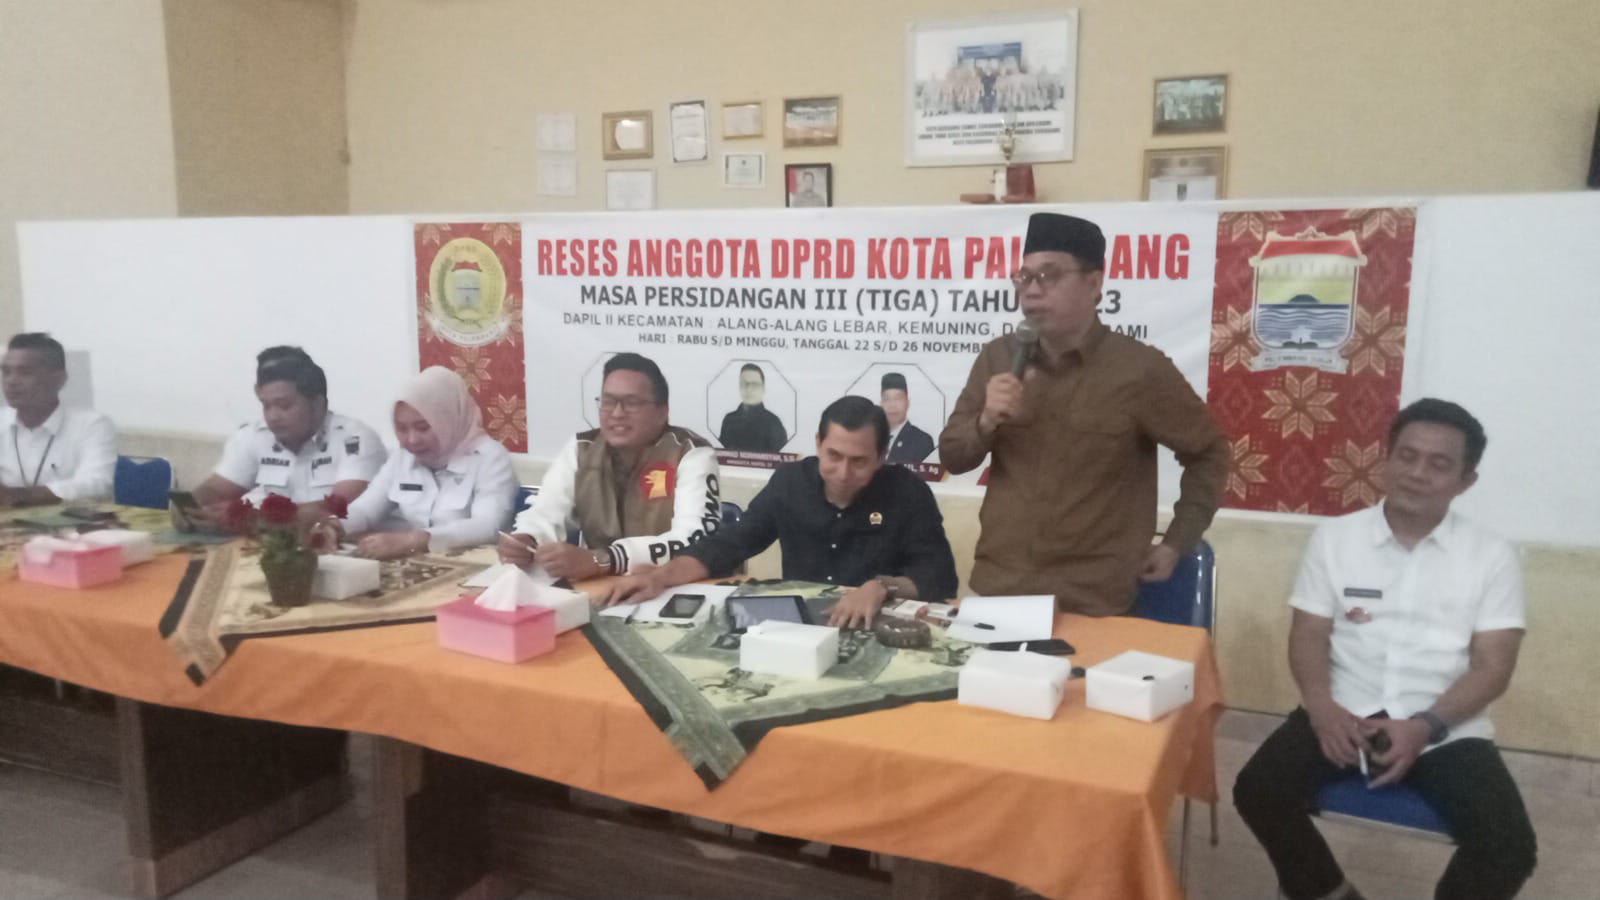 Reses Anggota DPRD Kota Palembang Dapil II Tampung Aspirasi Warga di Kecamatan Sukarami